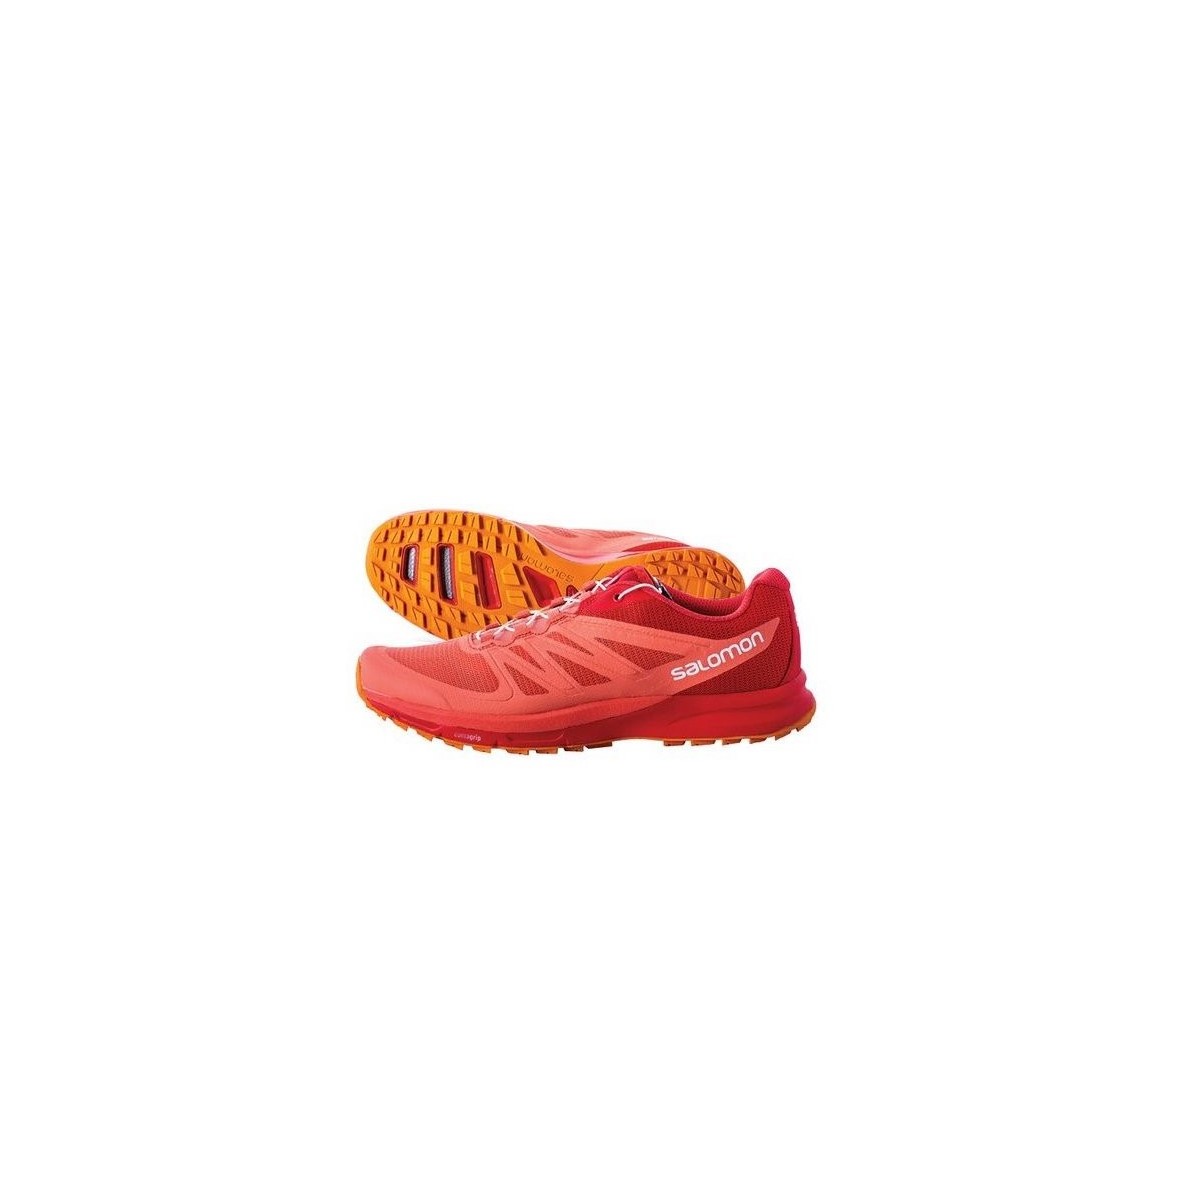 salomon shoes orange